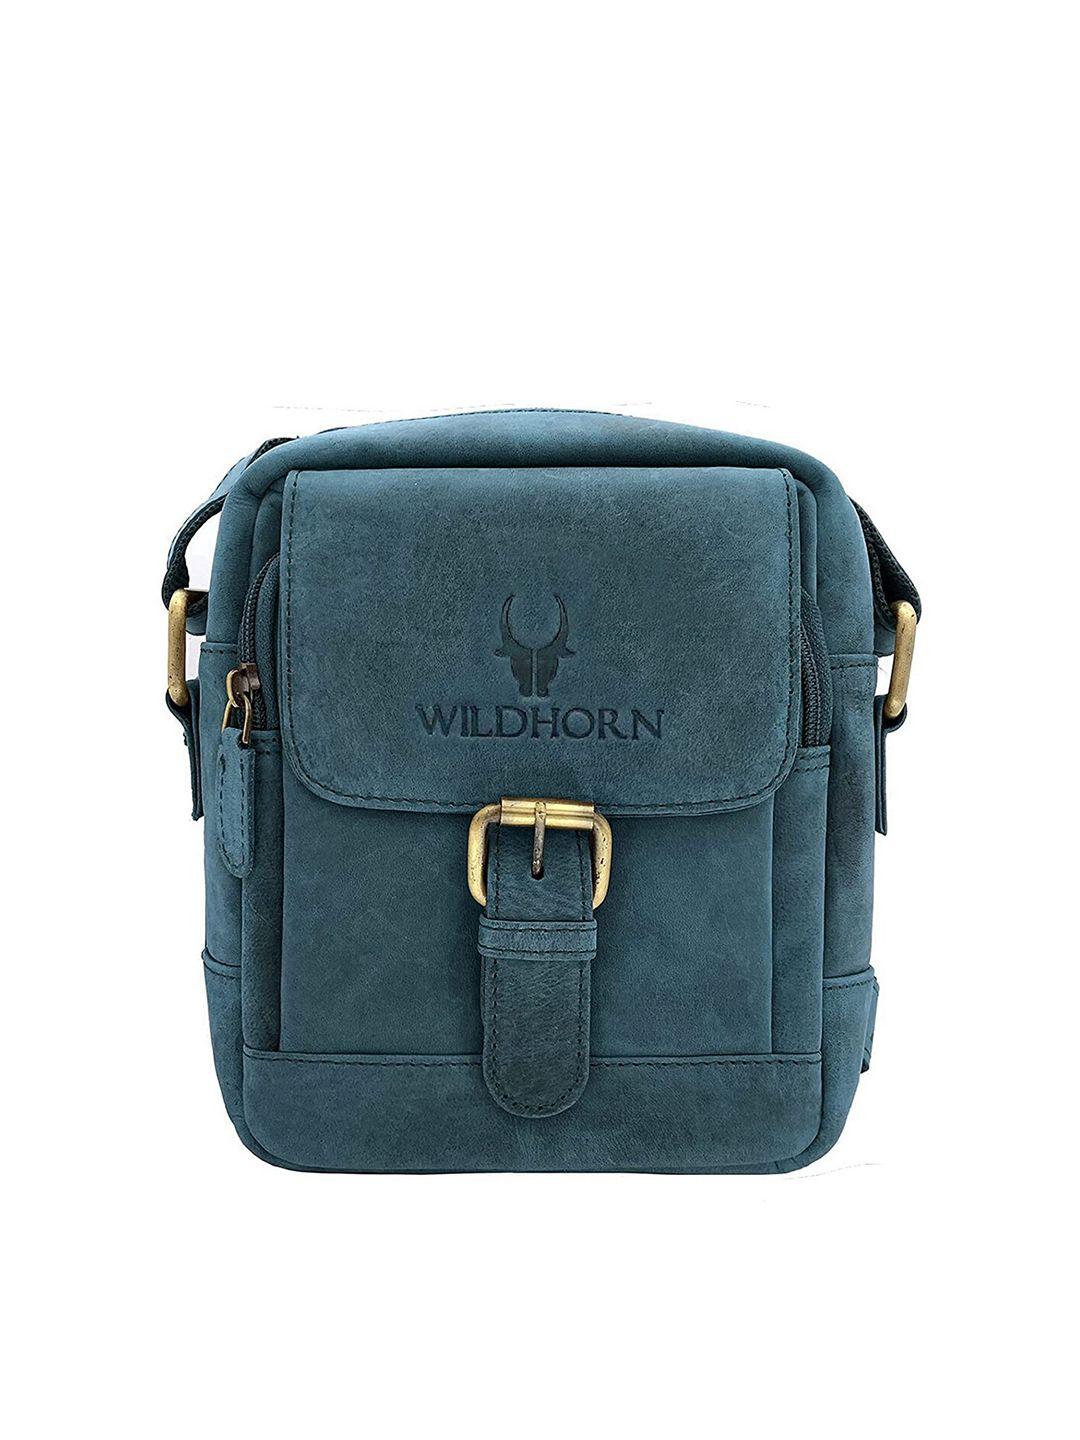 wildhorn men blue & gold-toned textured leather messenger bag